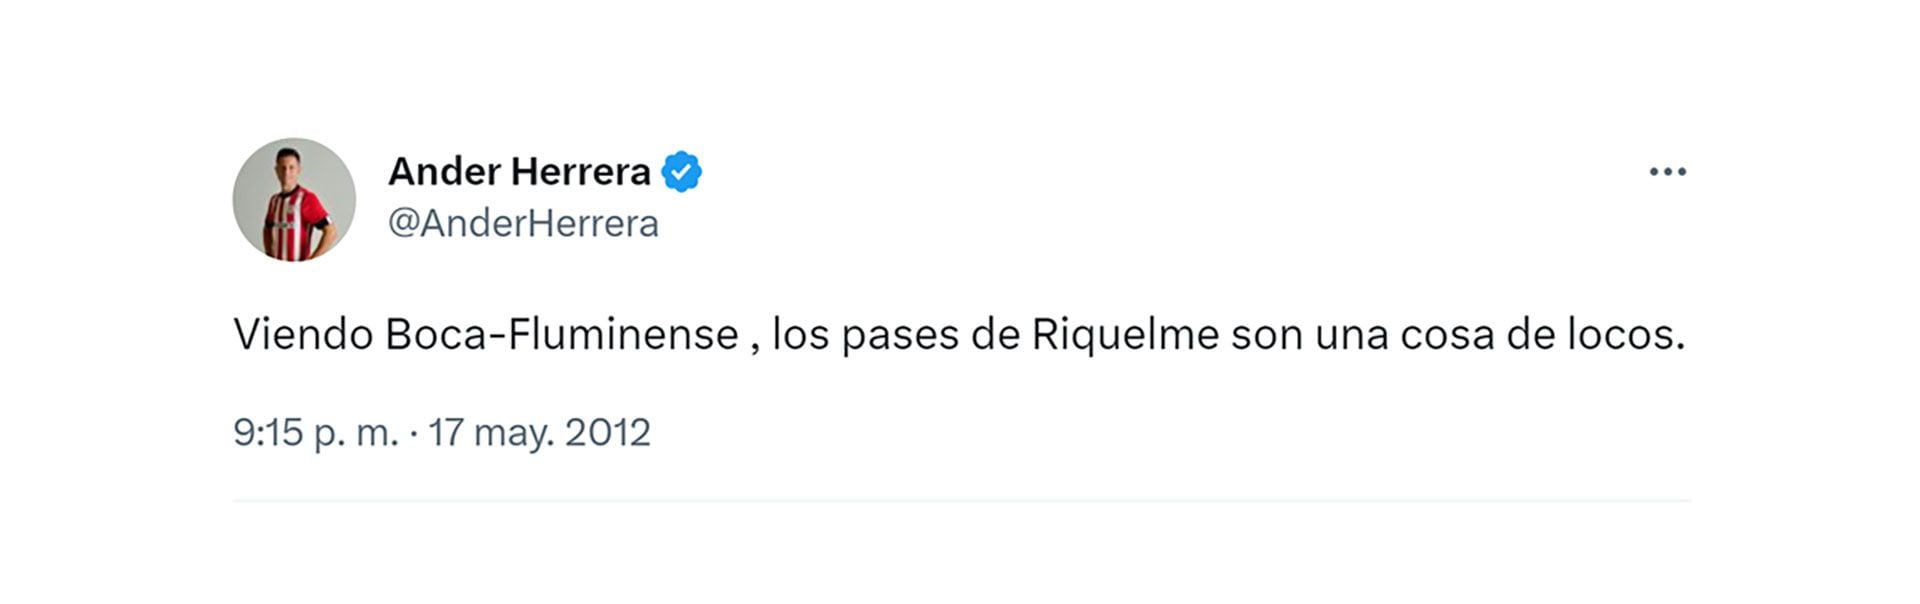 El posteo de Herrera en 2012 en el que ya admiraba a Riquelme (@AnderHerrera)